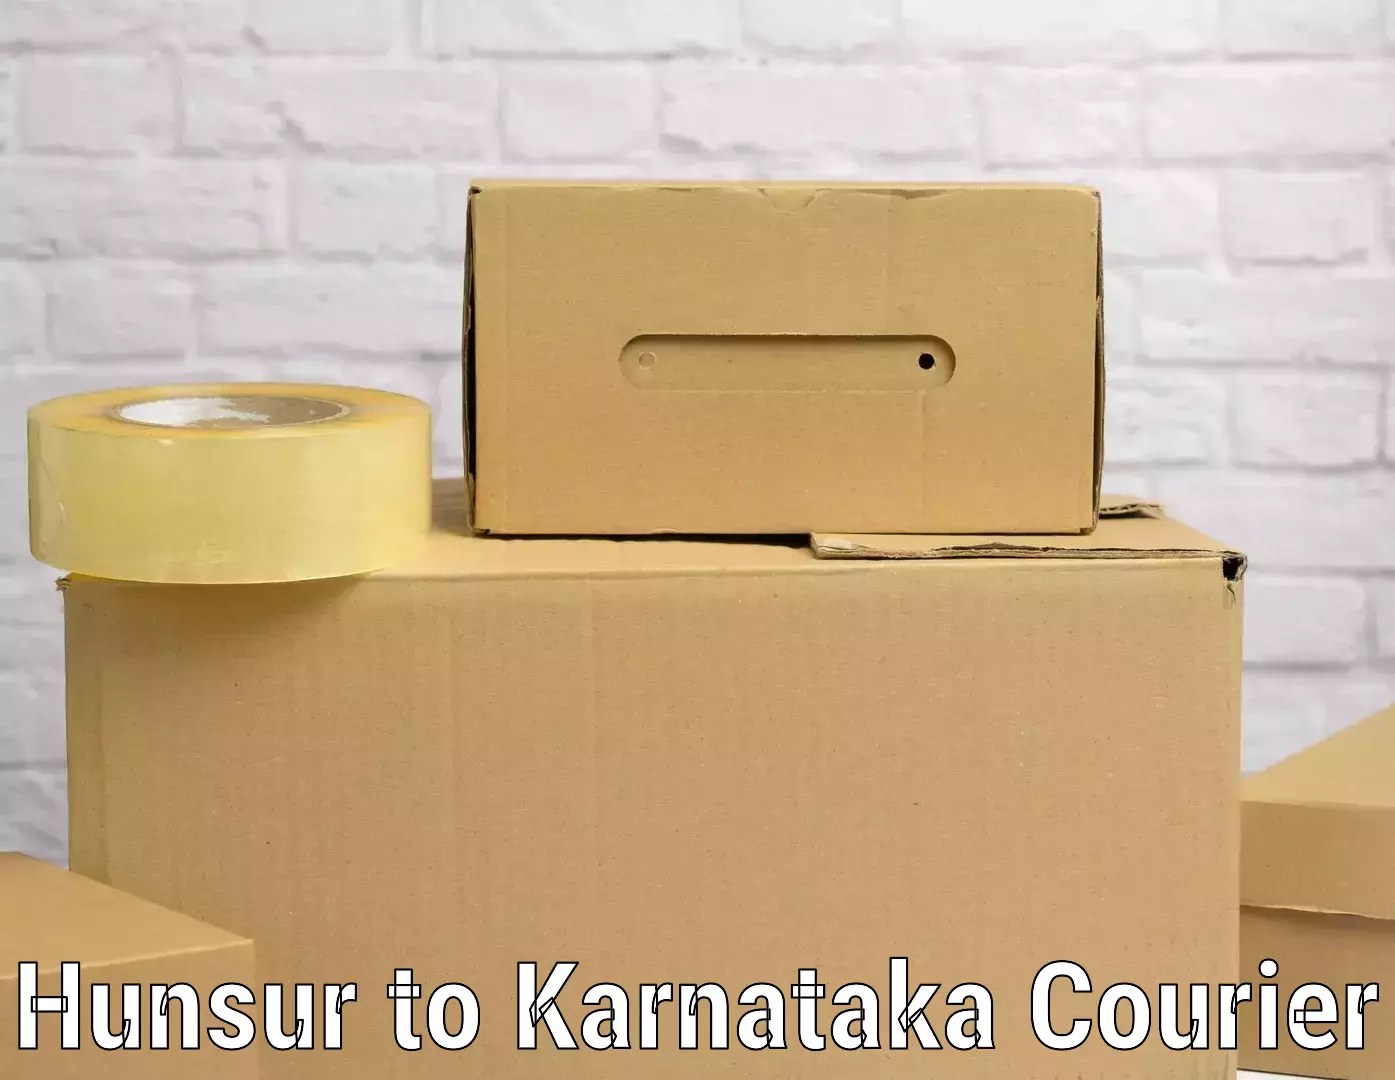 Express baggage shipping in Hunsur to Karnataka